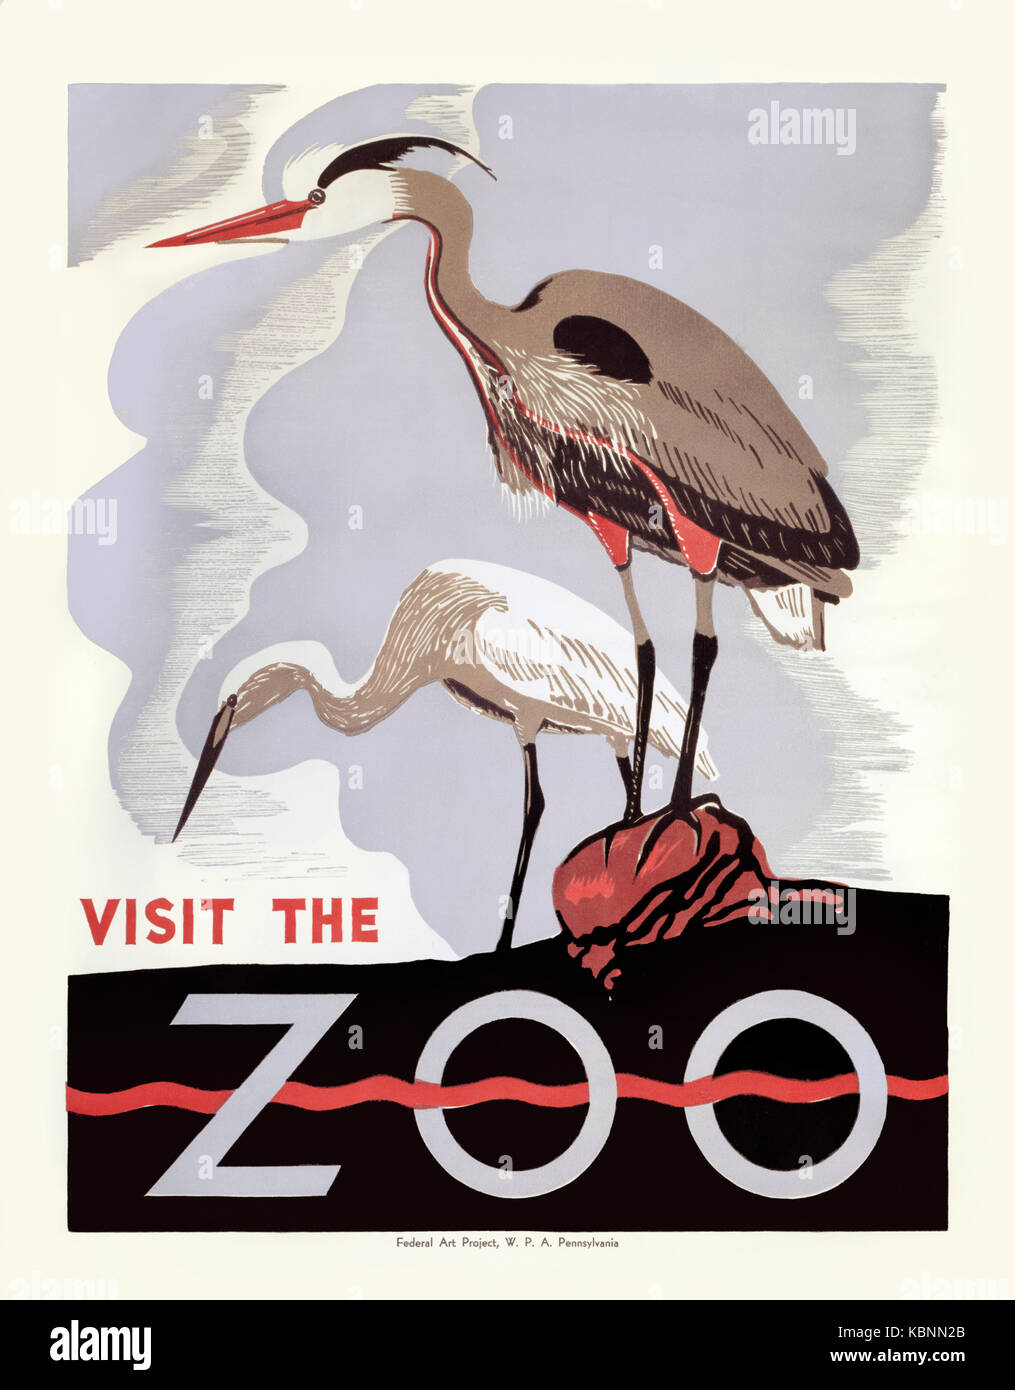 "Visitare lo Zoo" 1936 poster per lo Zoo di Filadelfia con un woodblock stampa di due aironi. Prodotte sotto il progetto federale numero uno sponsorizzato da opere corso Amministrazione (WPA); creato nel 1935 come parte del New Deal del presidente Franklin D. Roosevelt per affrontare la Grande Depressione. Foto Stock